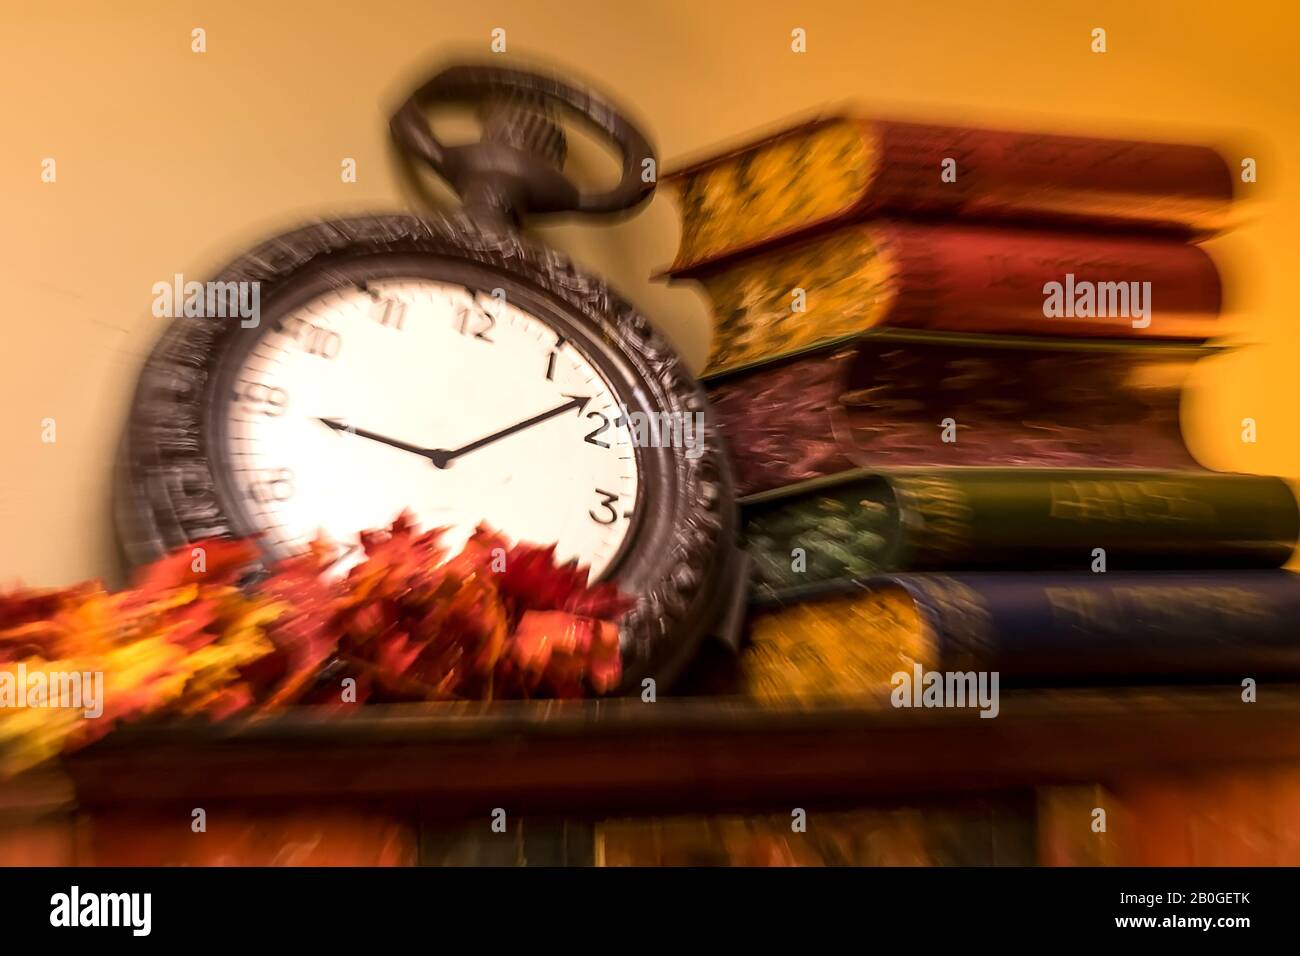 Aiguilles d'horloge et vieux livres représentant l'heure. Mouvement flou. Banque D'Images